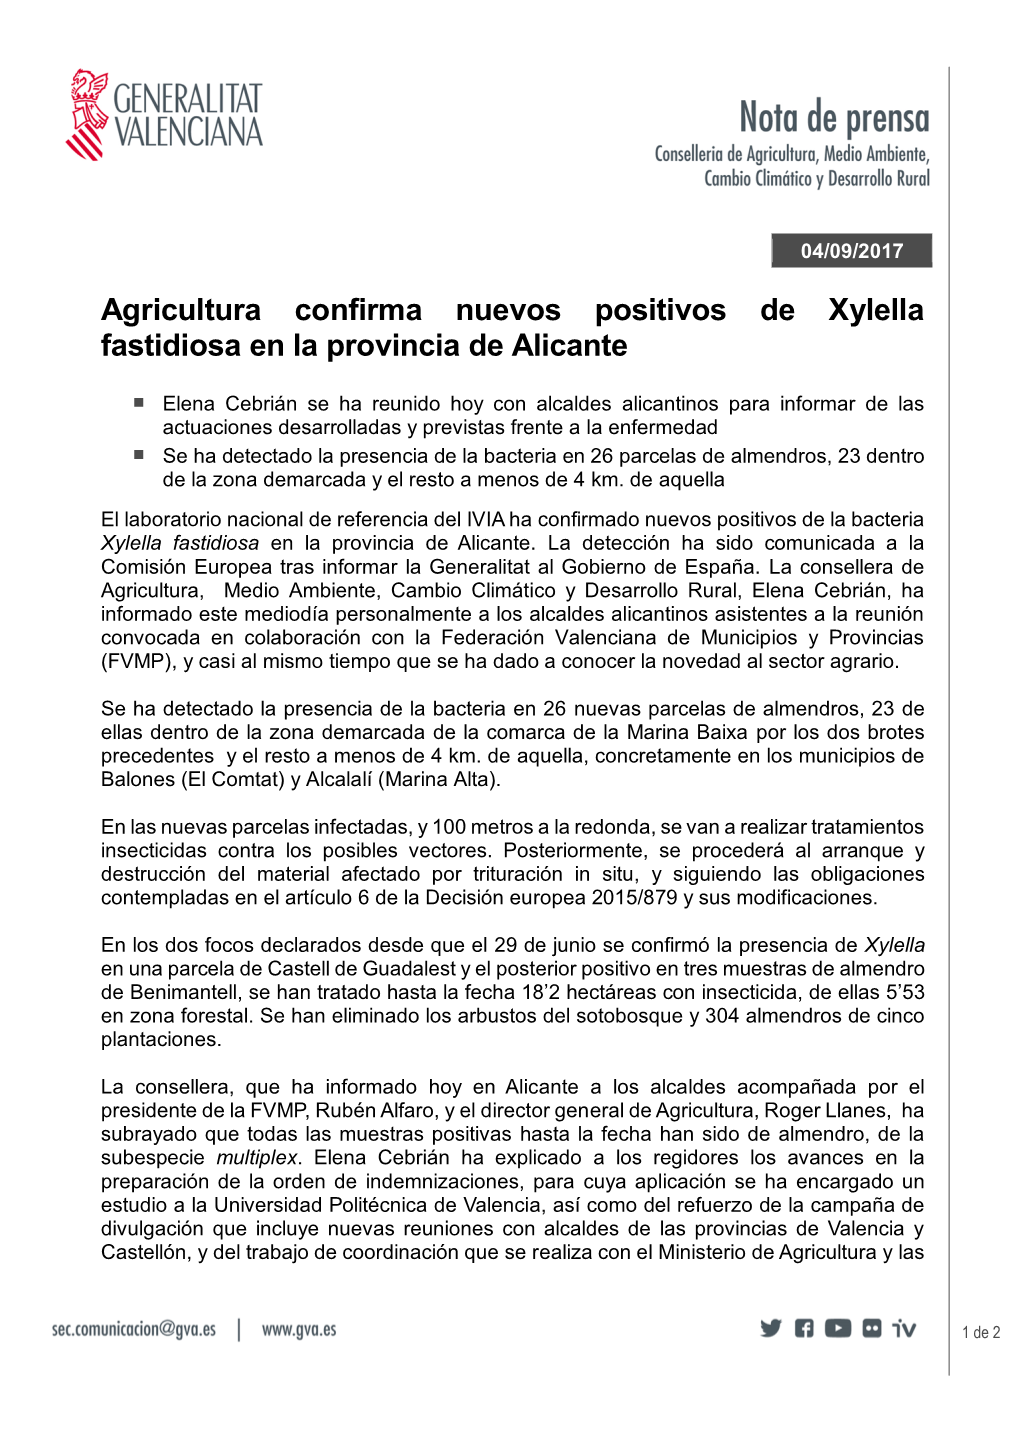 Agricultura Confirma Nuevos Positivos De Xylella Fastidiosa En La Provincia De Alicante